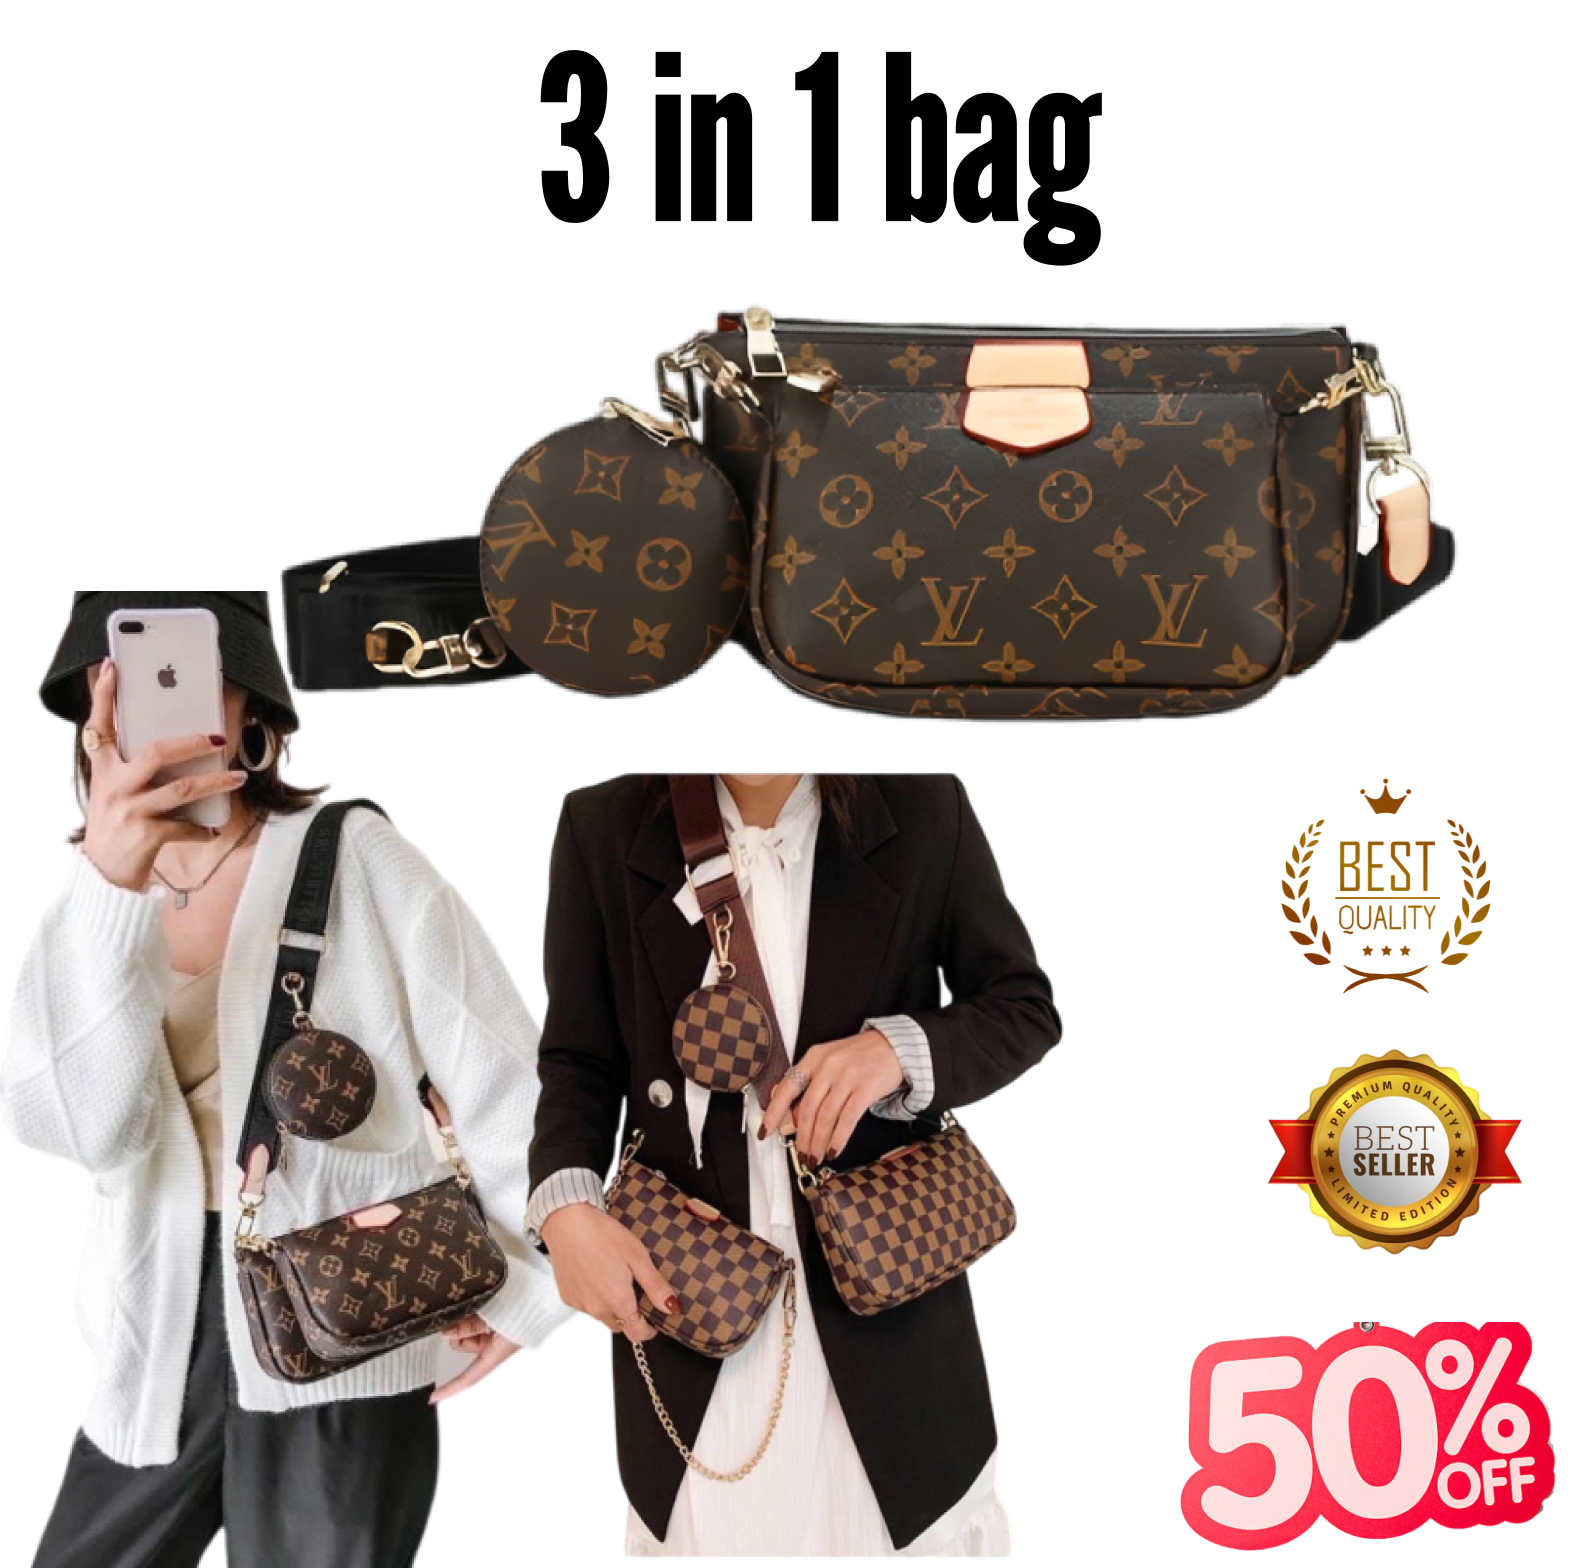 Shop 2 N 1 Bag online